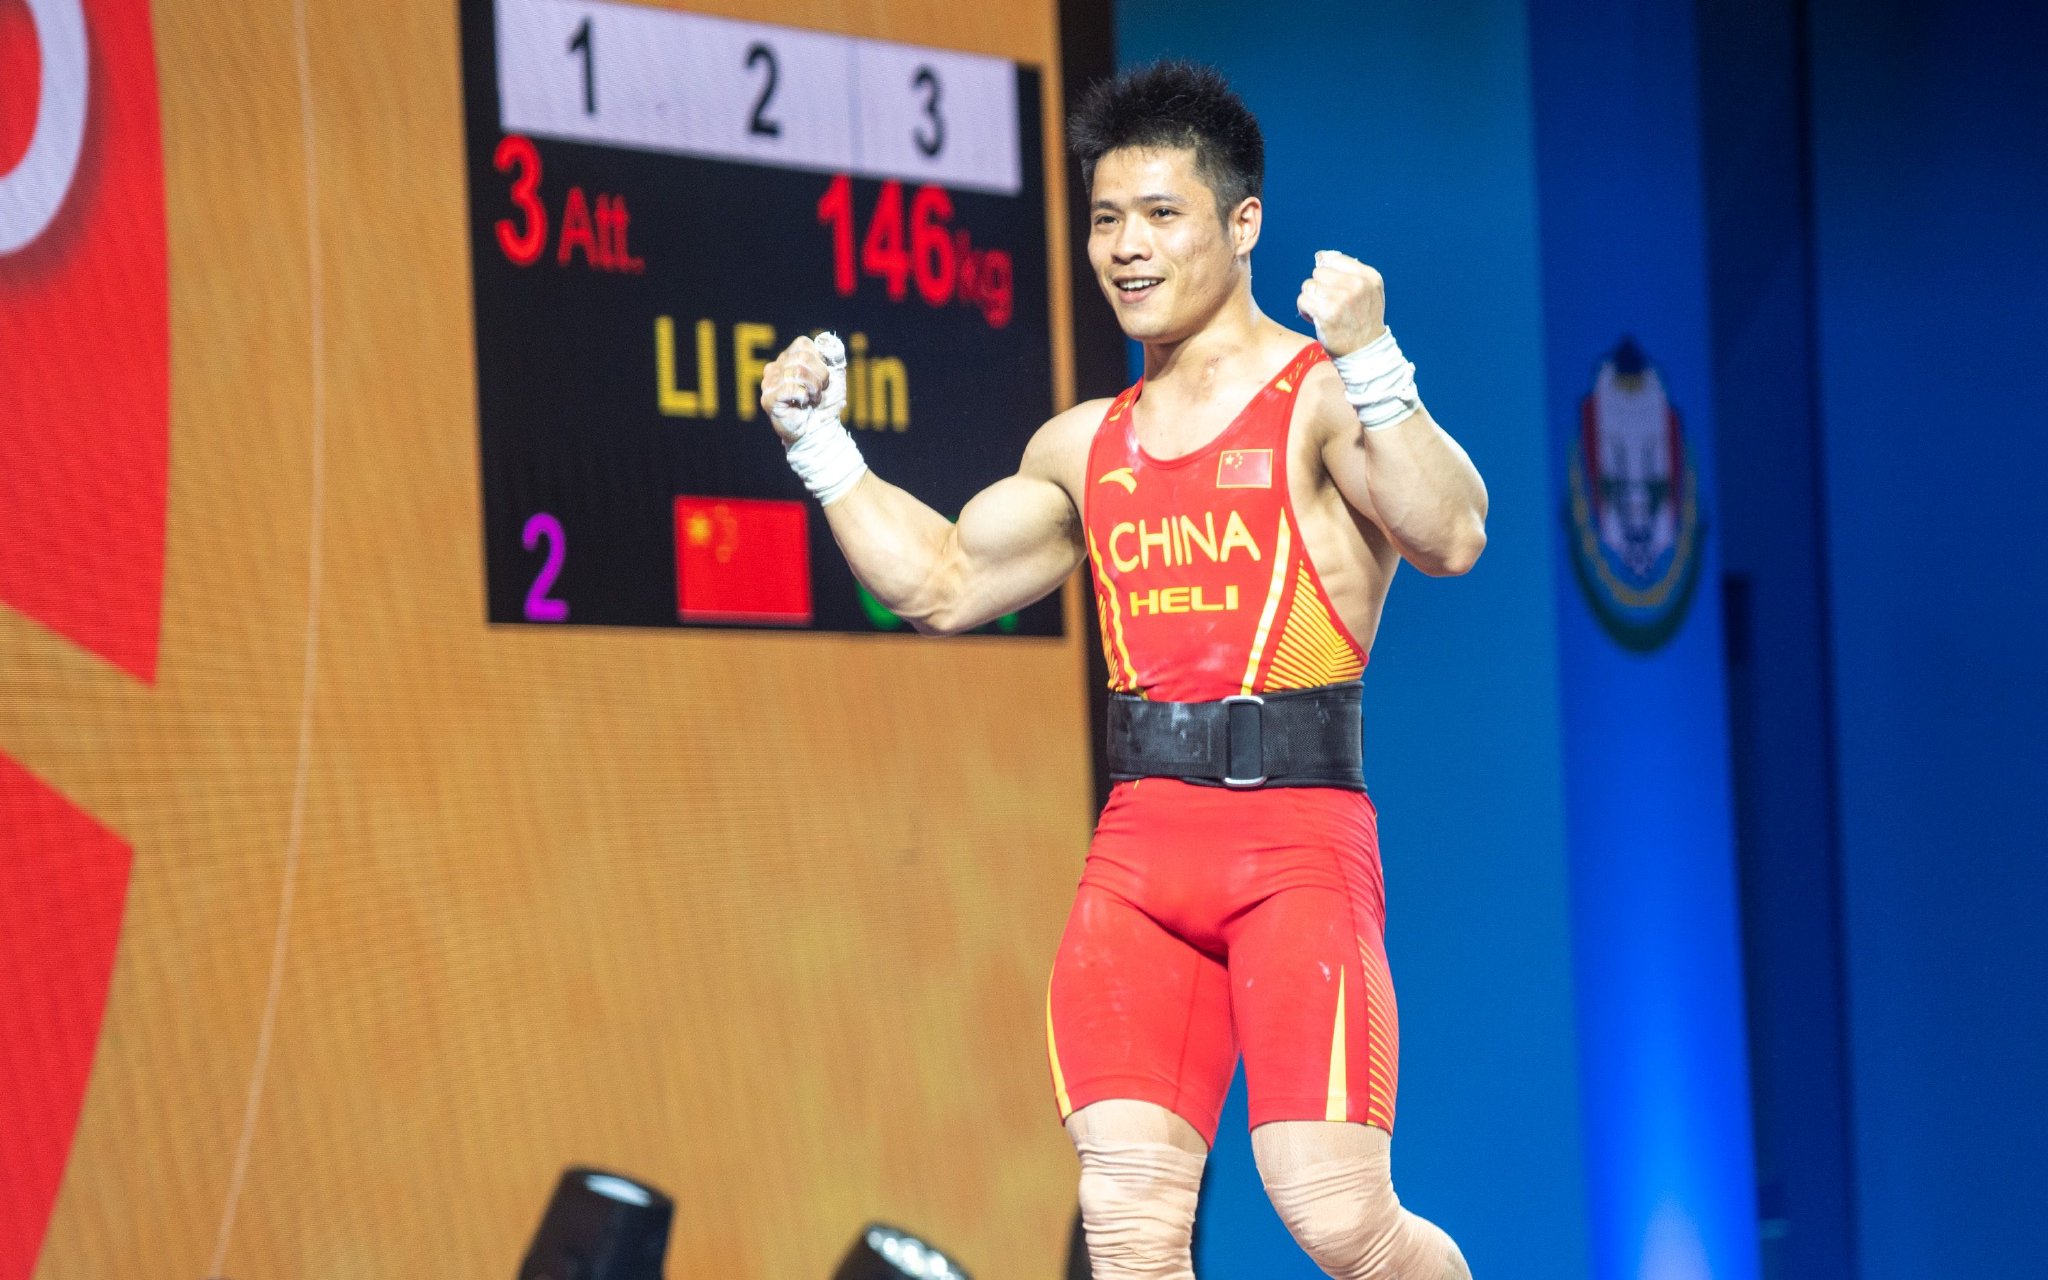 李發彬以146公斤的成績打破抓舉世界紀錄。 圖/新華社